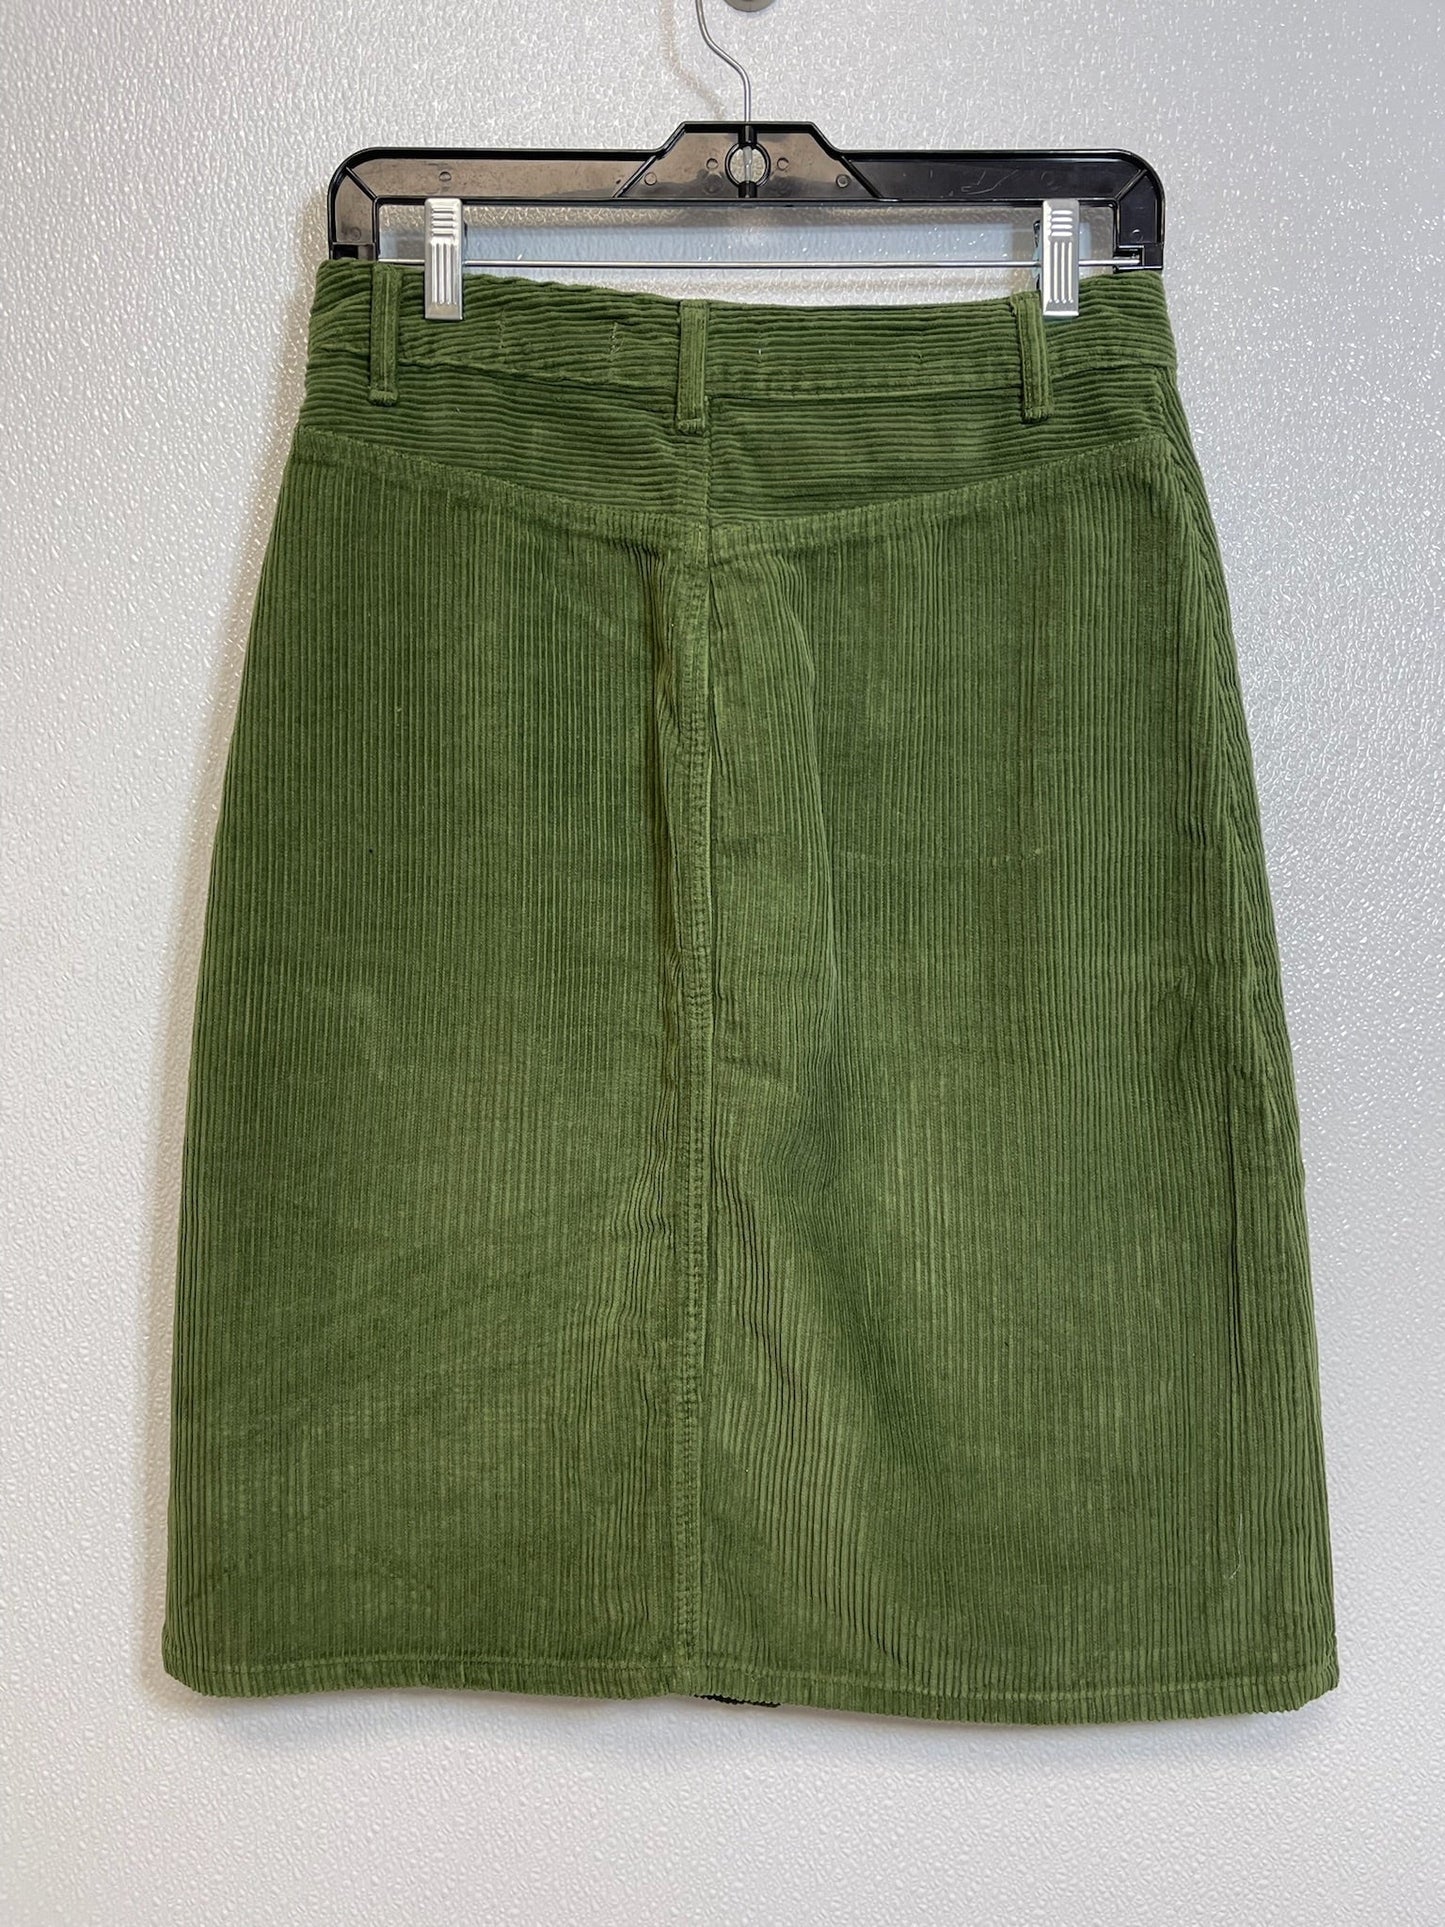 Green Skirt Mini & Short Pilcro, Size 2